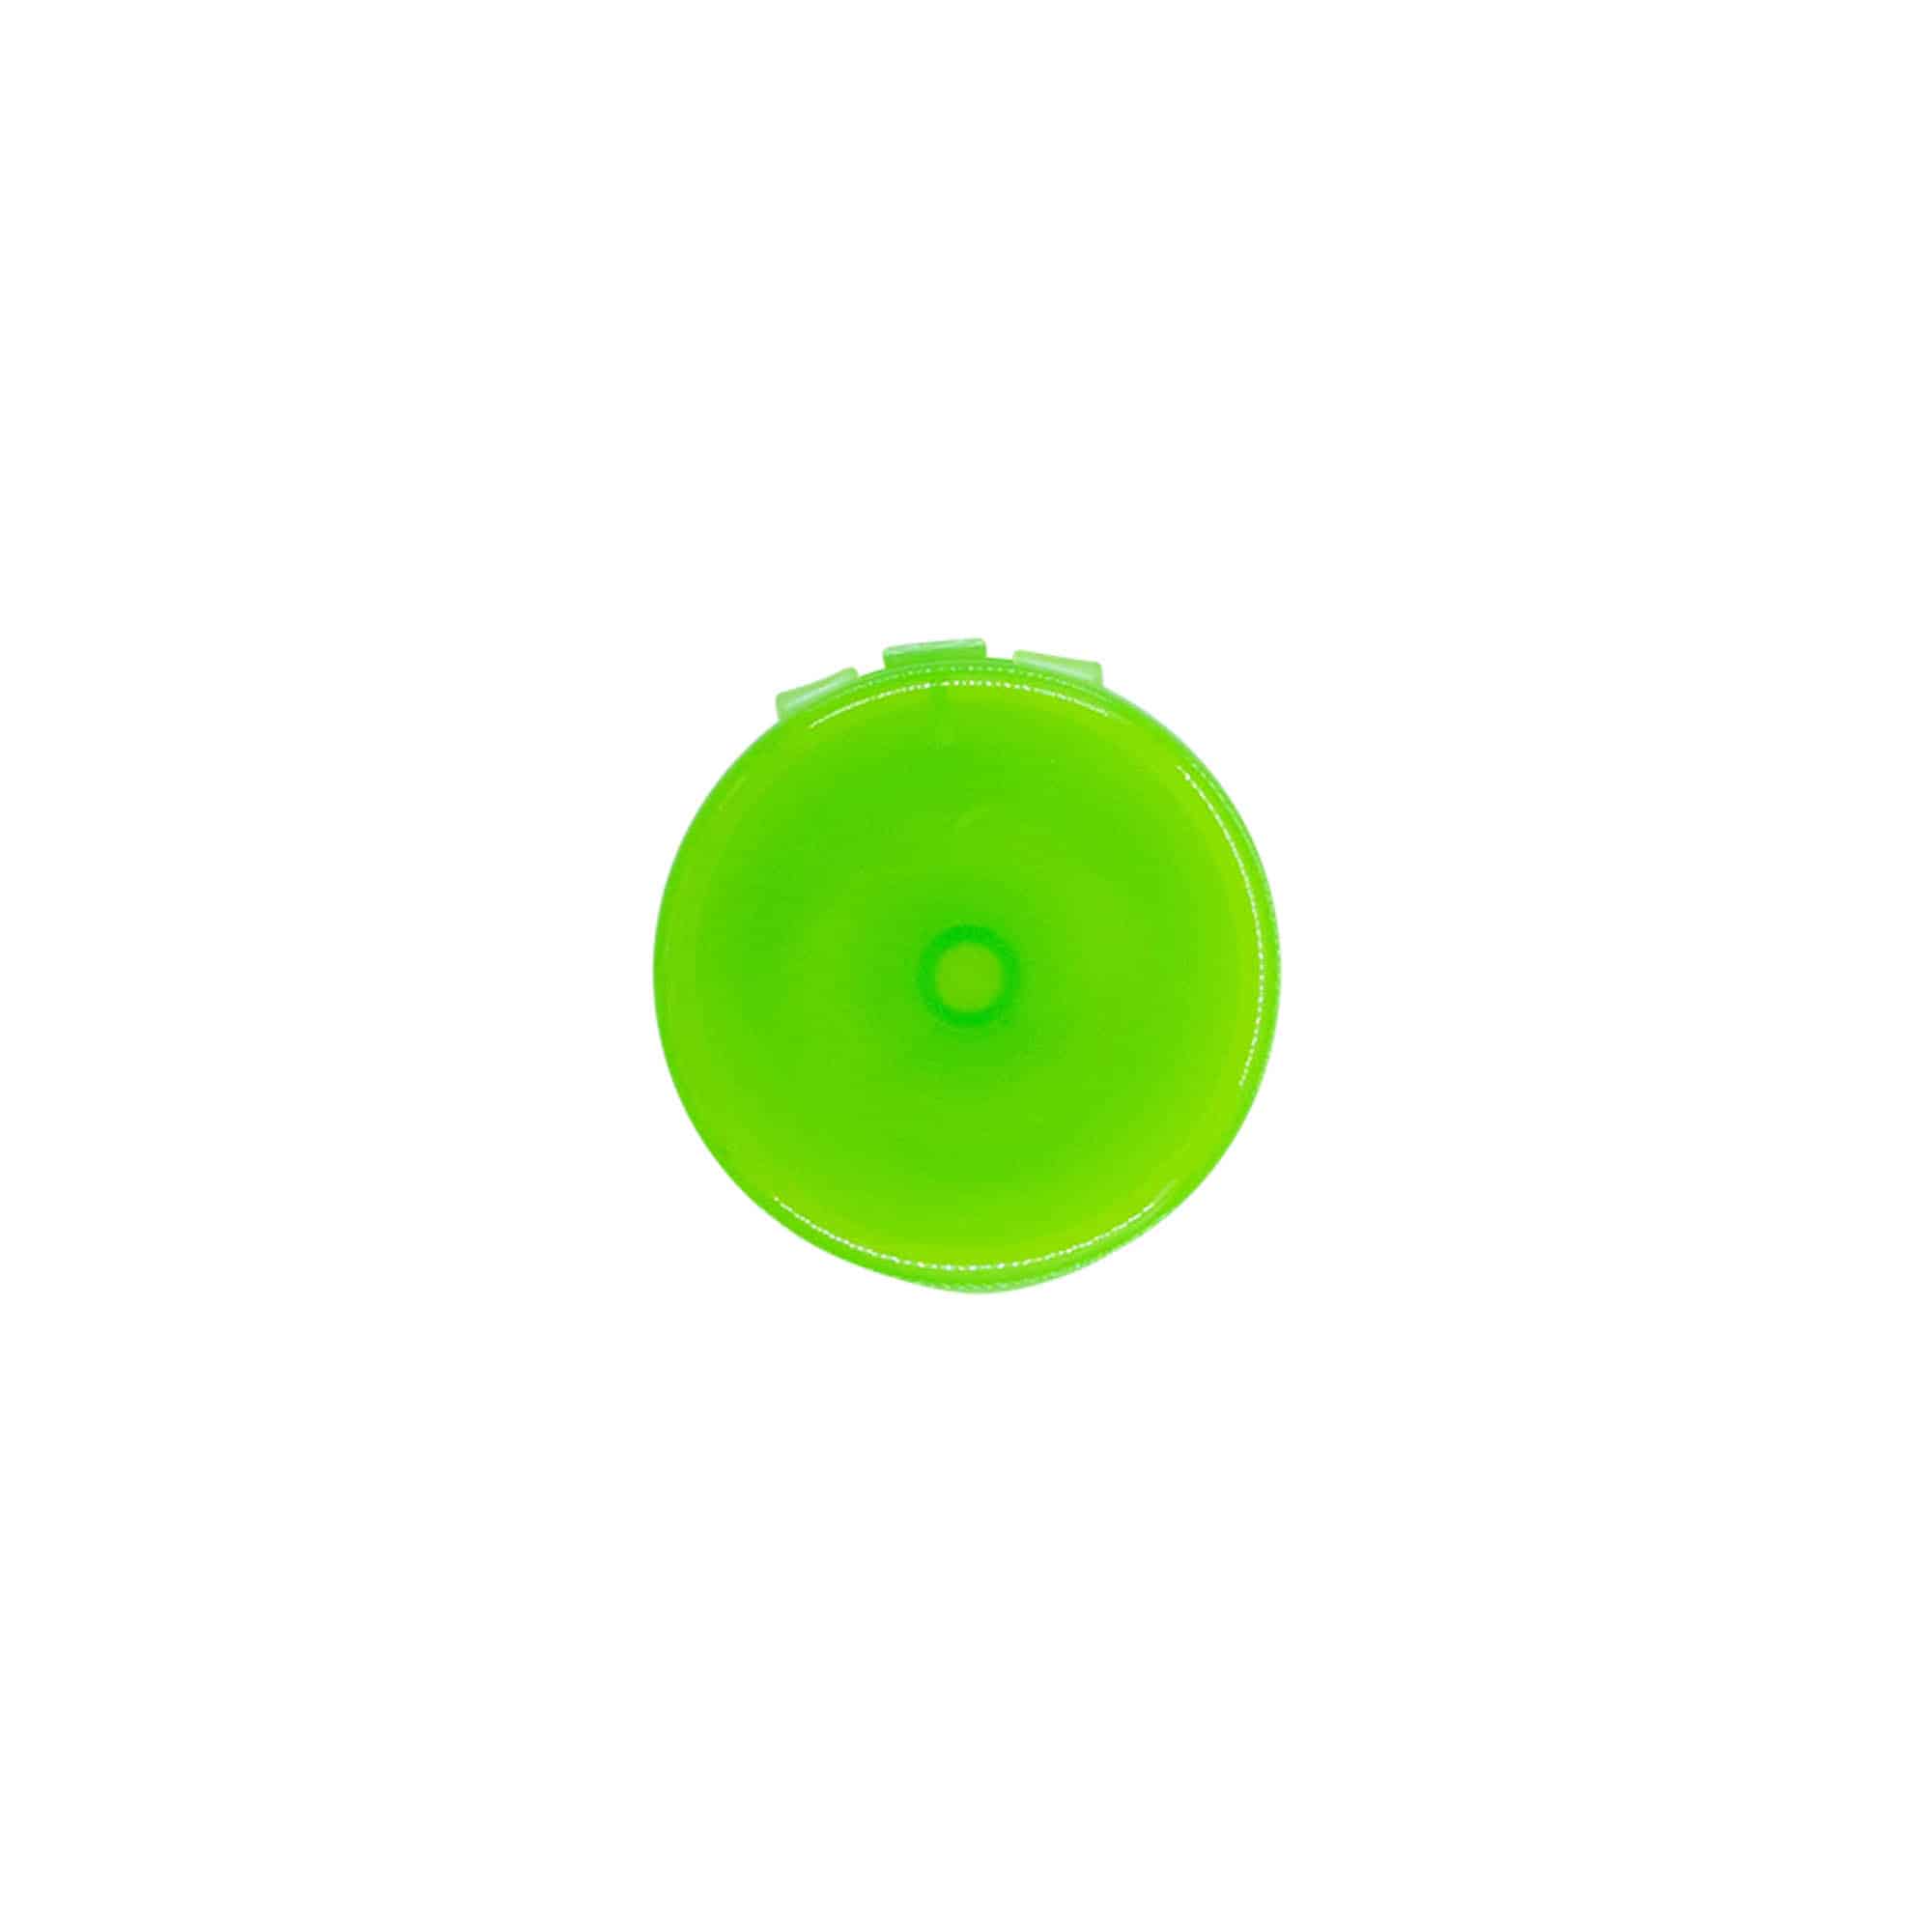 Skruvkapsel gångjärnslock, PP-plast, grön, för mynning: GPI 24/410